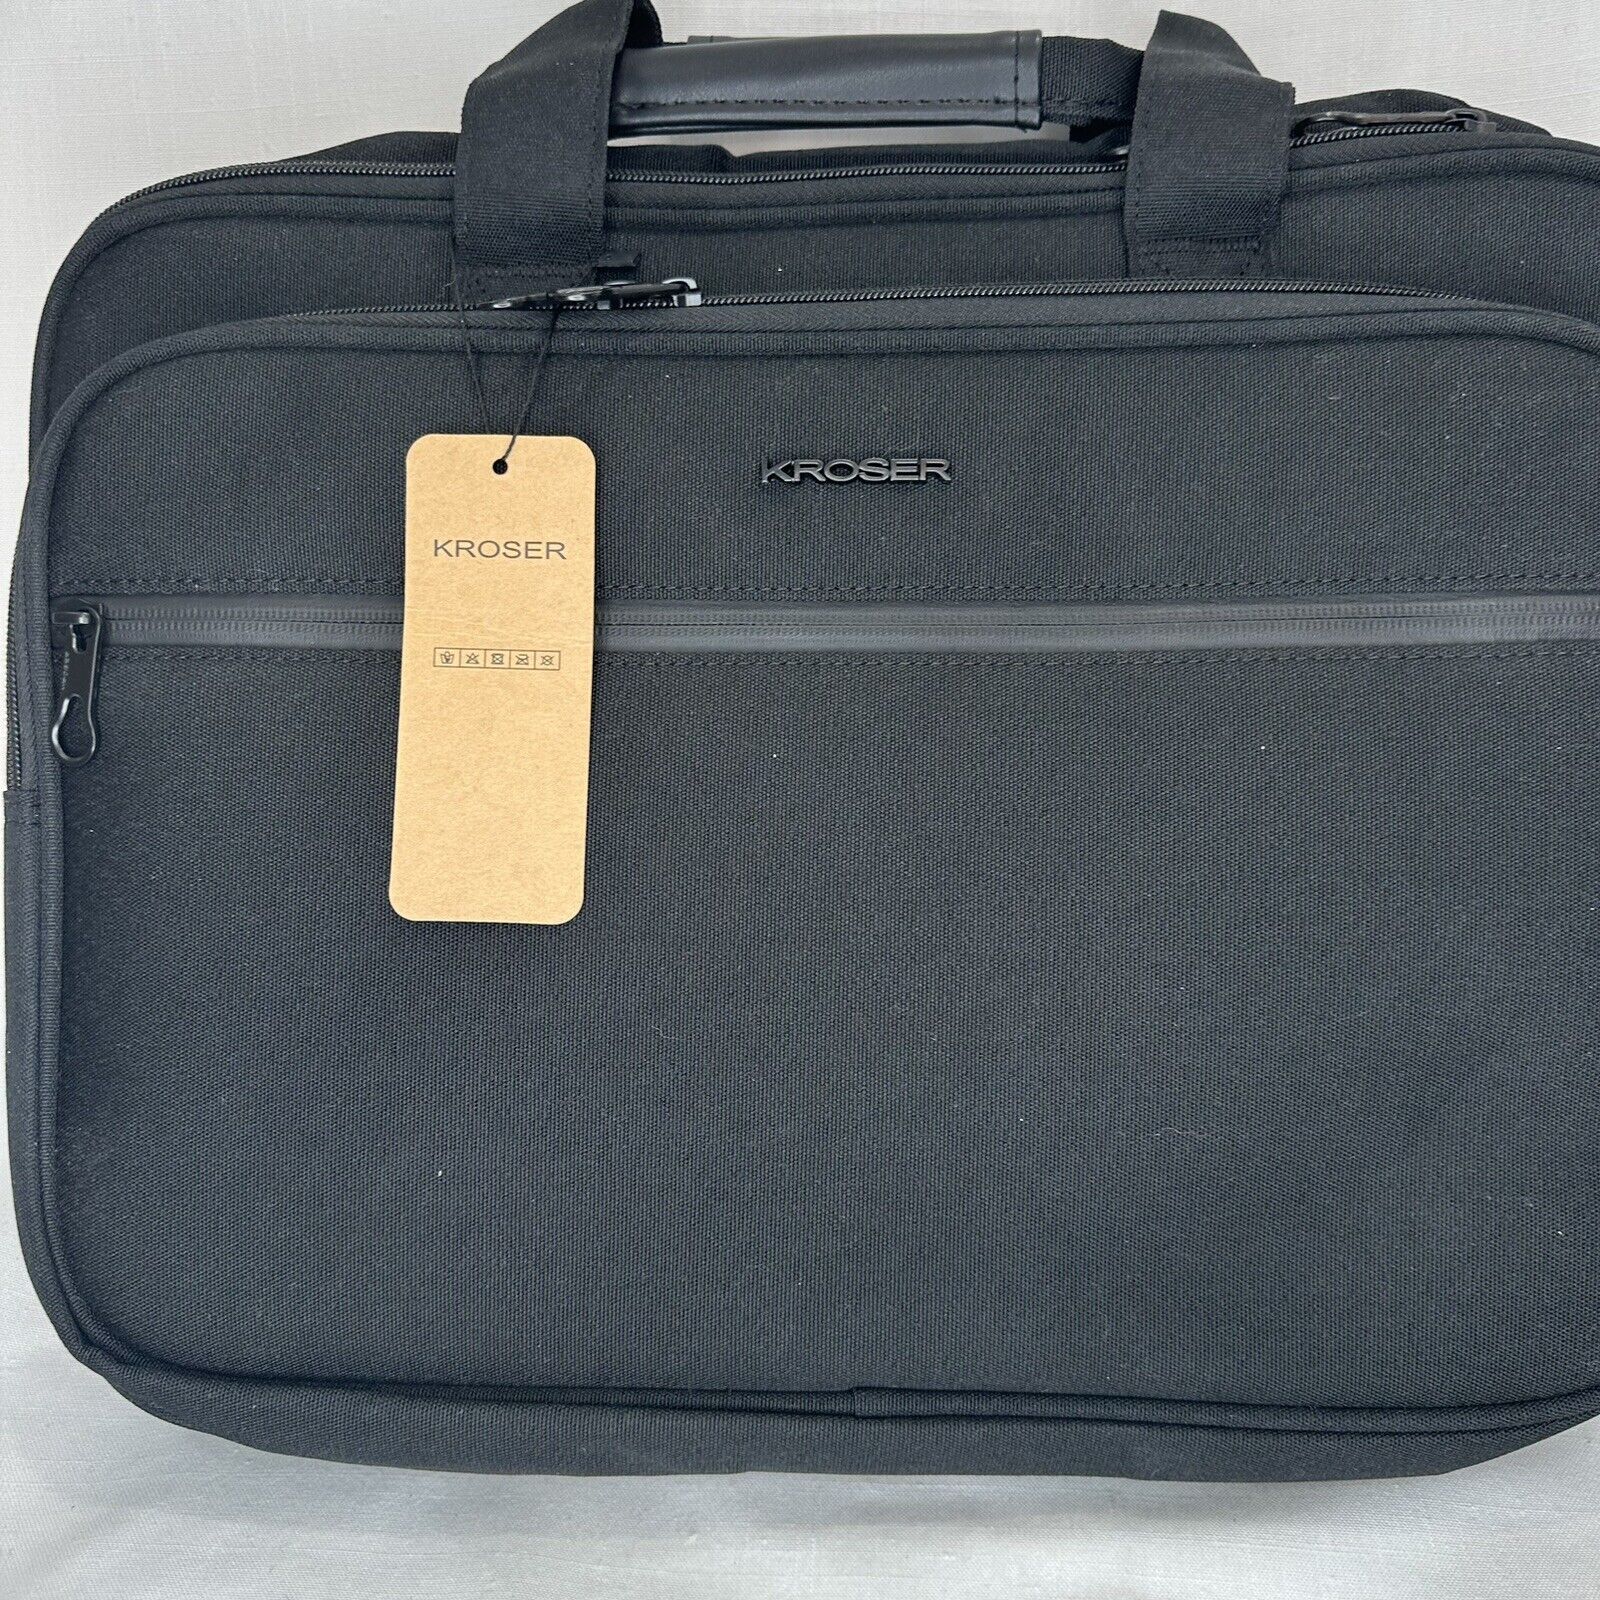 Kroser Laptop Bag Briefcase Shoulder Bag Water Repellent Laptop Bag Satchel NWT